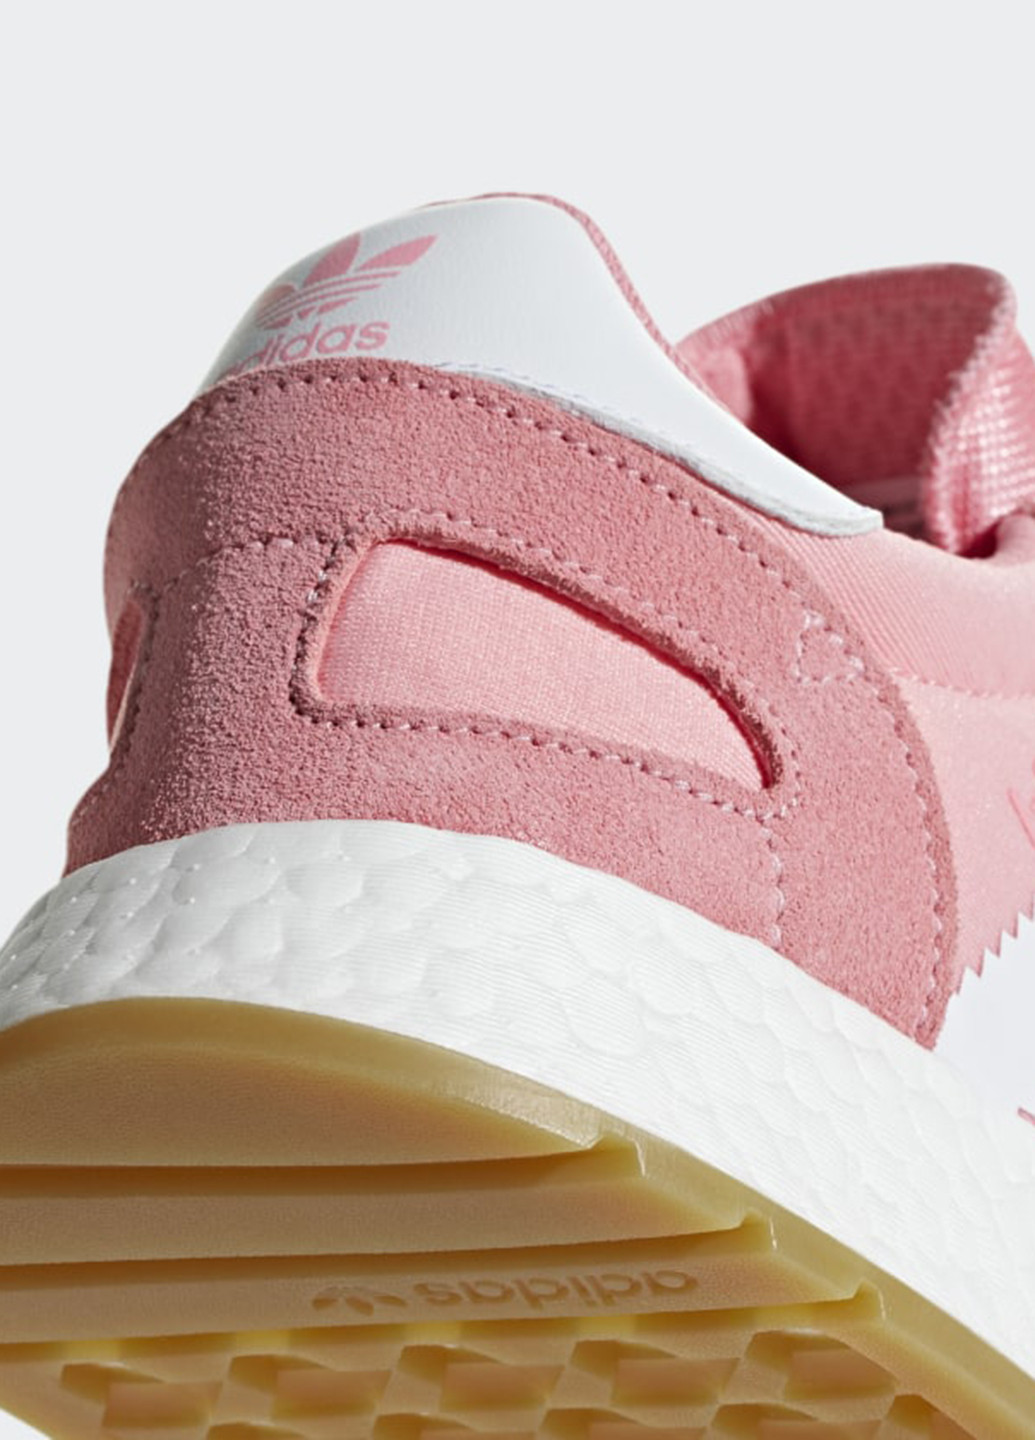 Розовые демисезонные кроссовки adidas I-5923